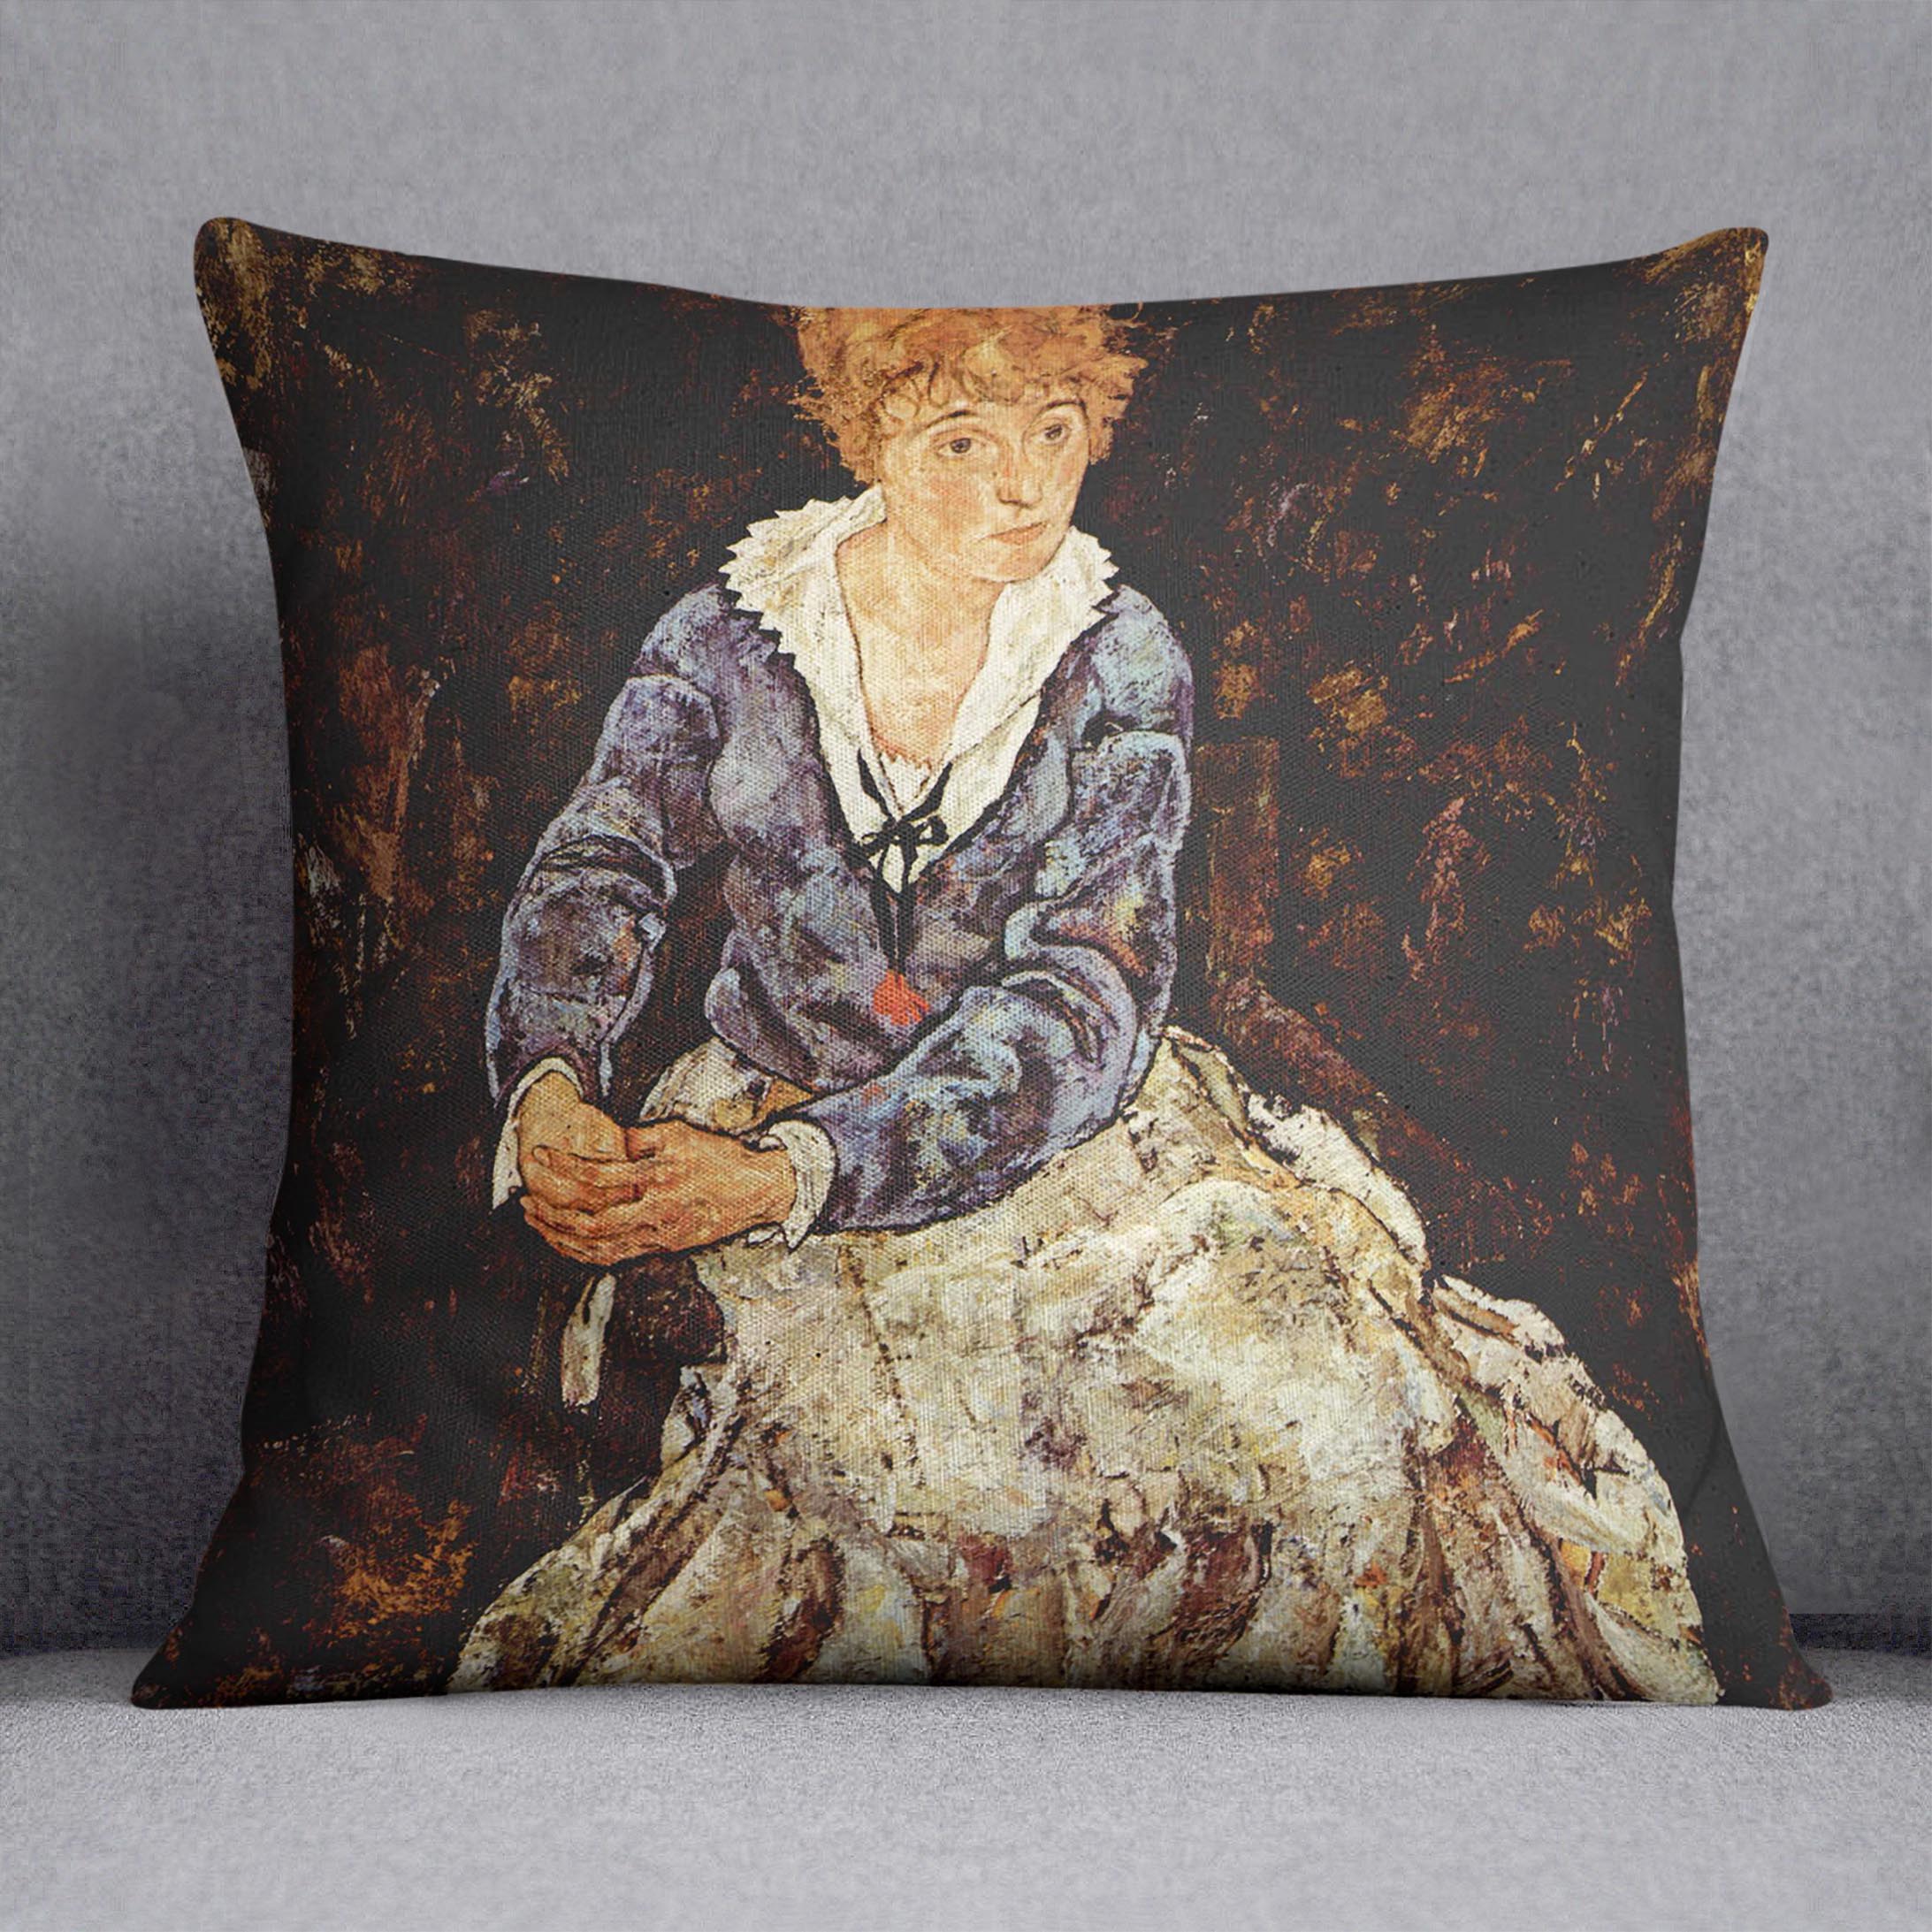 Portrait of Edith Egon Schiele sitting by Egon Schiele Cushion